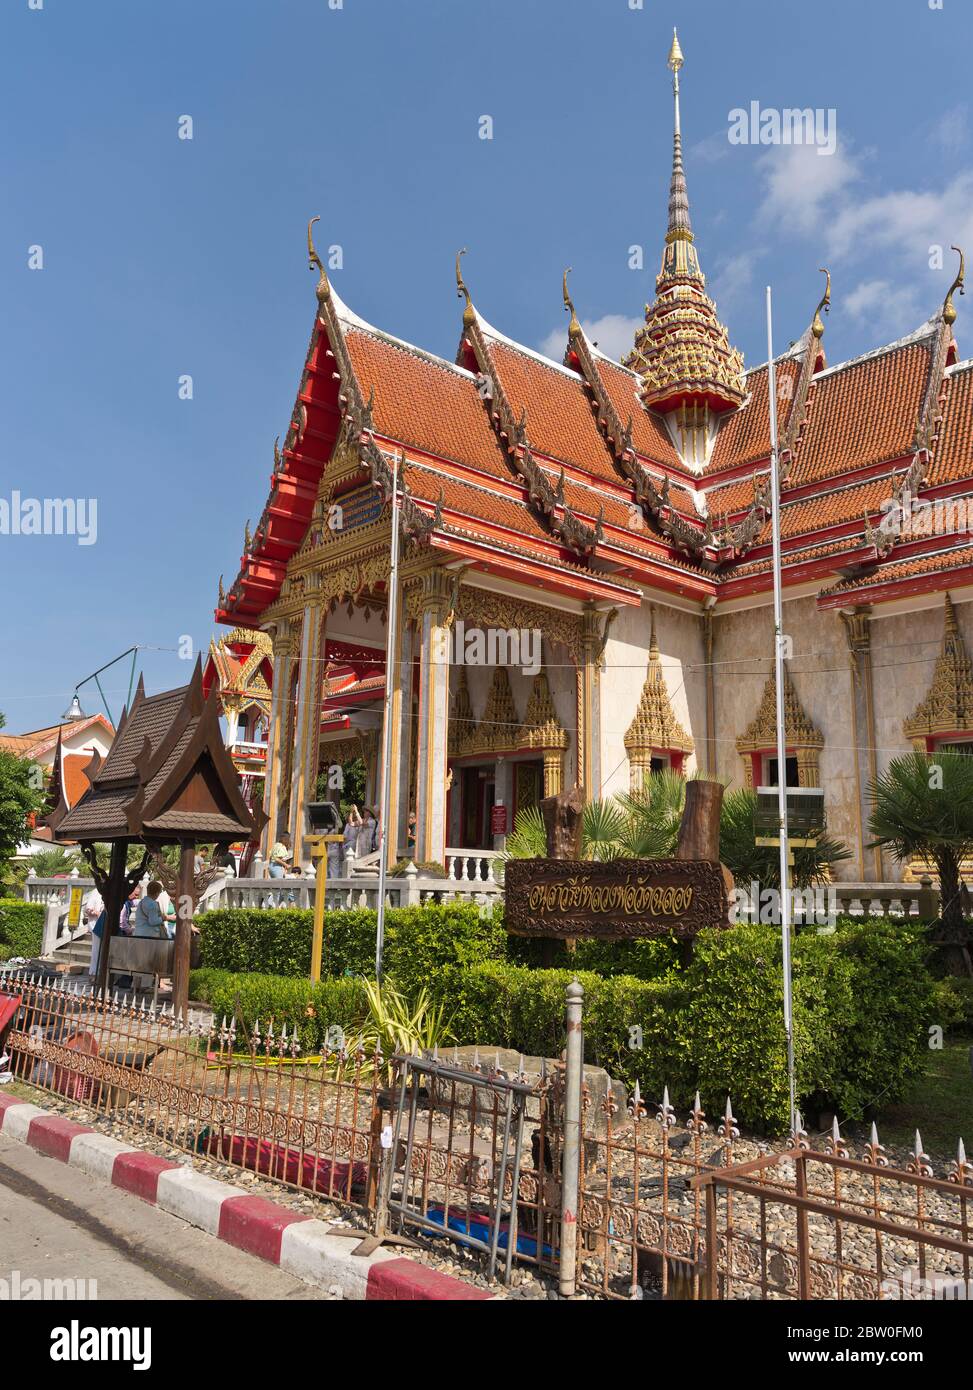 dh Wat chalong Buddhistischer Tempel PHUKET THAILAND Thailändische buddhistische Schrein Tempel außerhalb des buddhismus Stockfoto